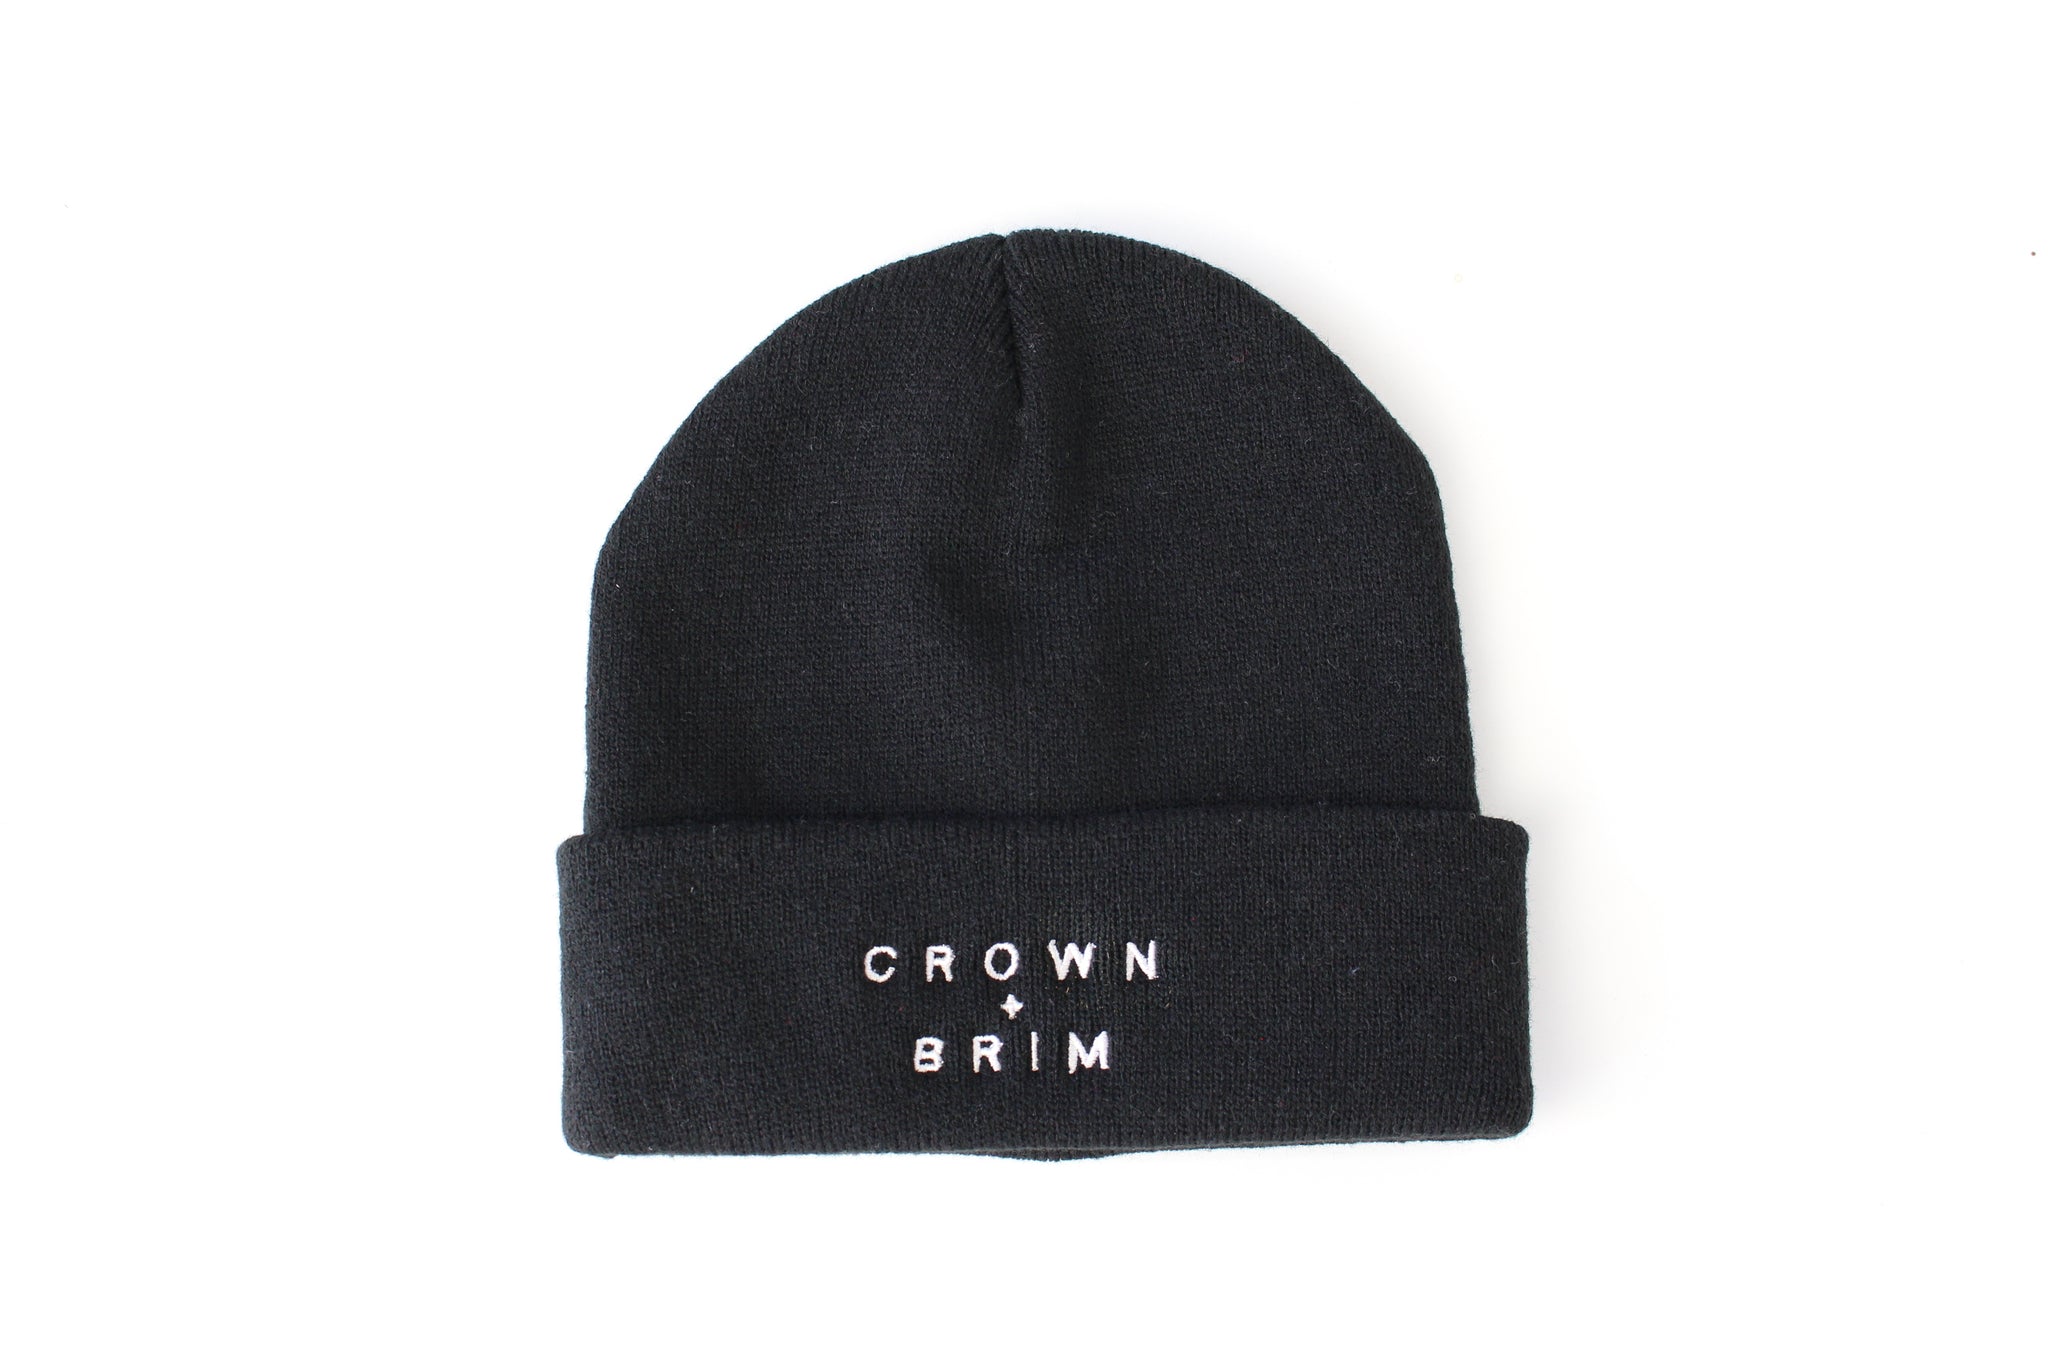 Crown + Brim Beanie - Black + White